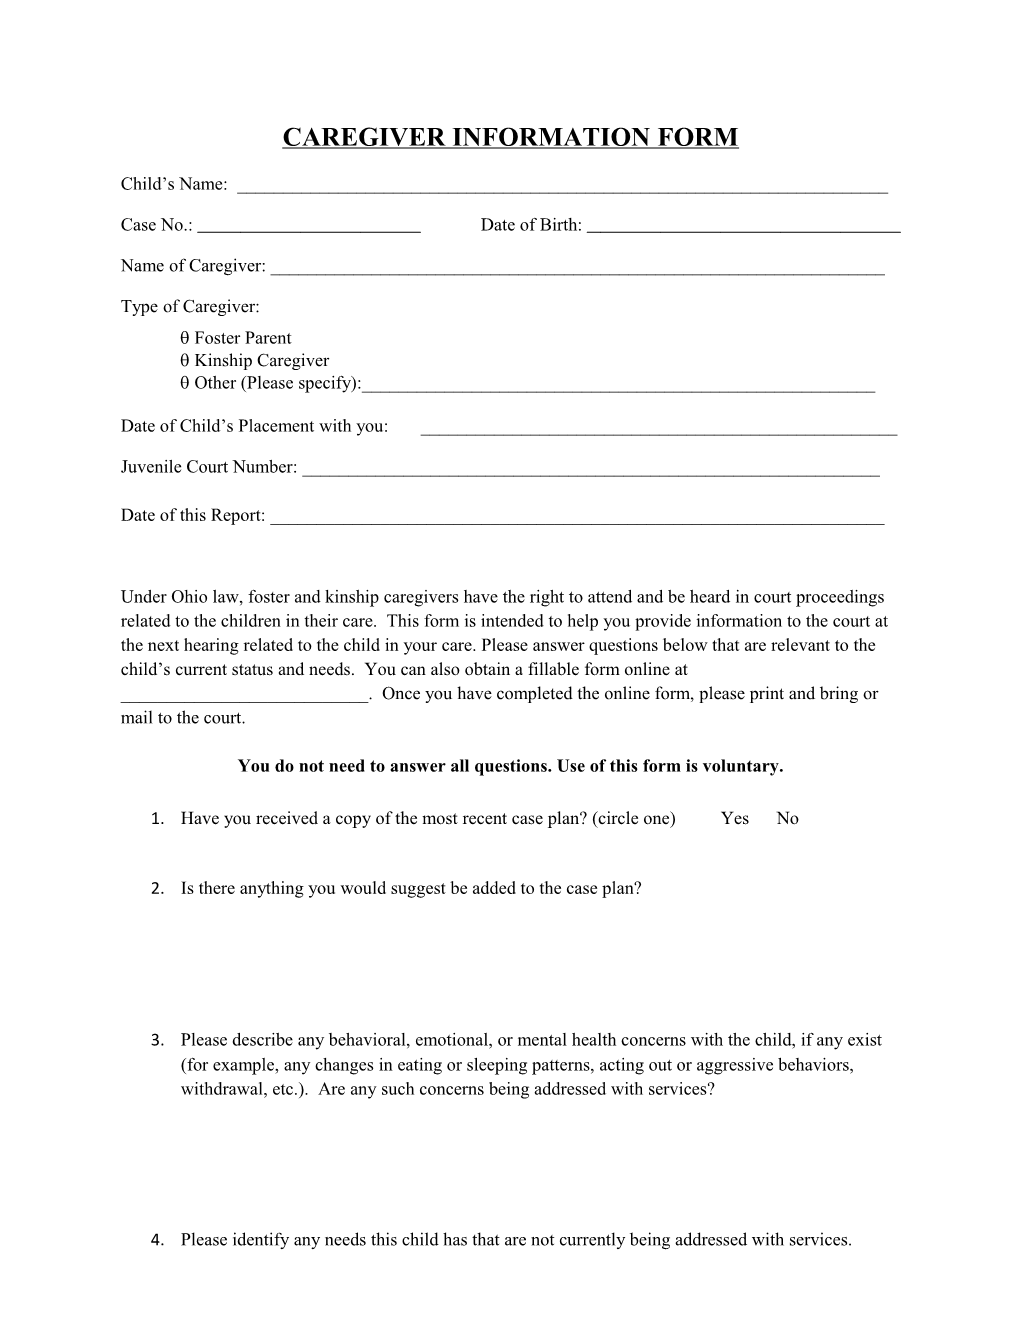 Caregiver Information Form s1